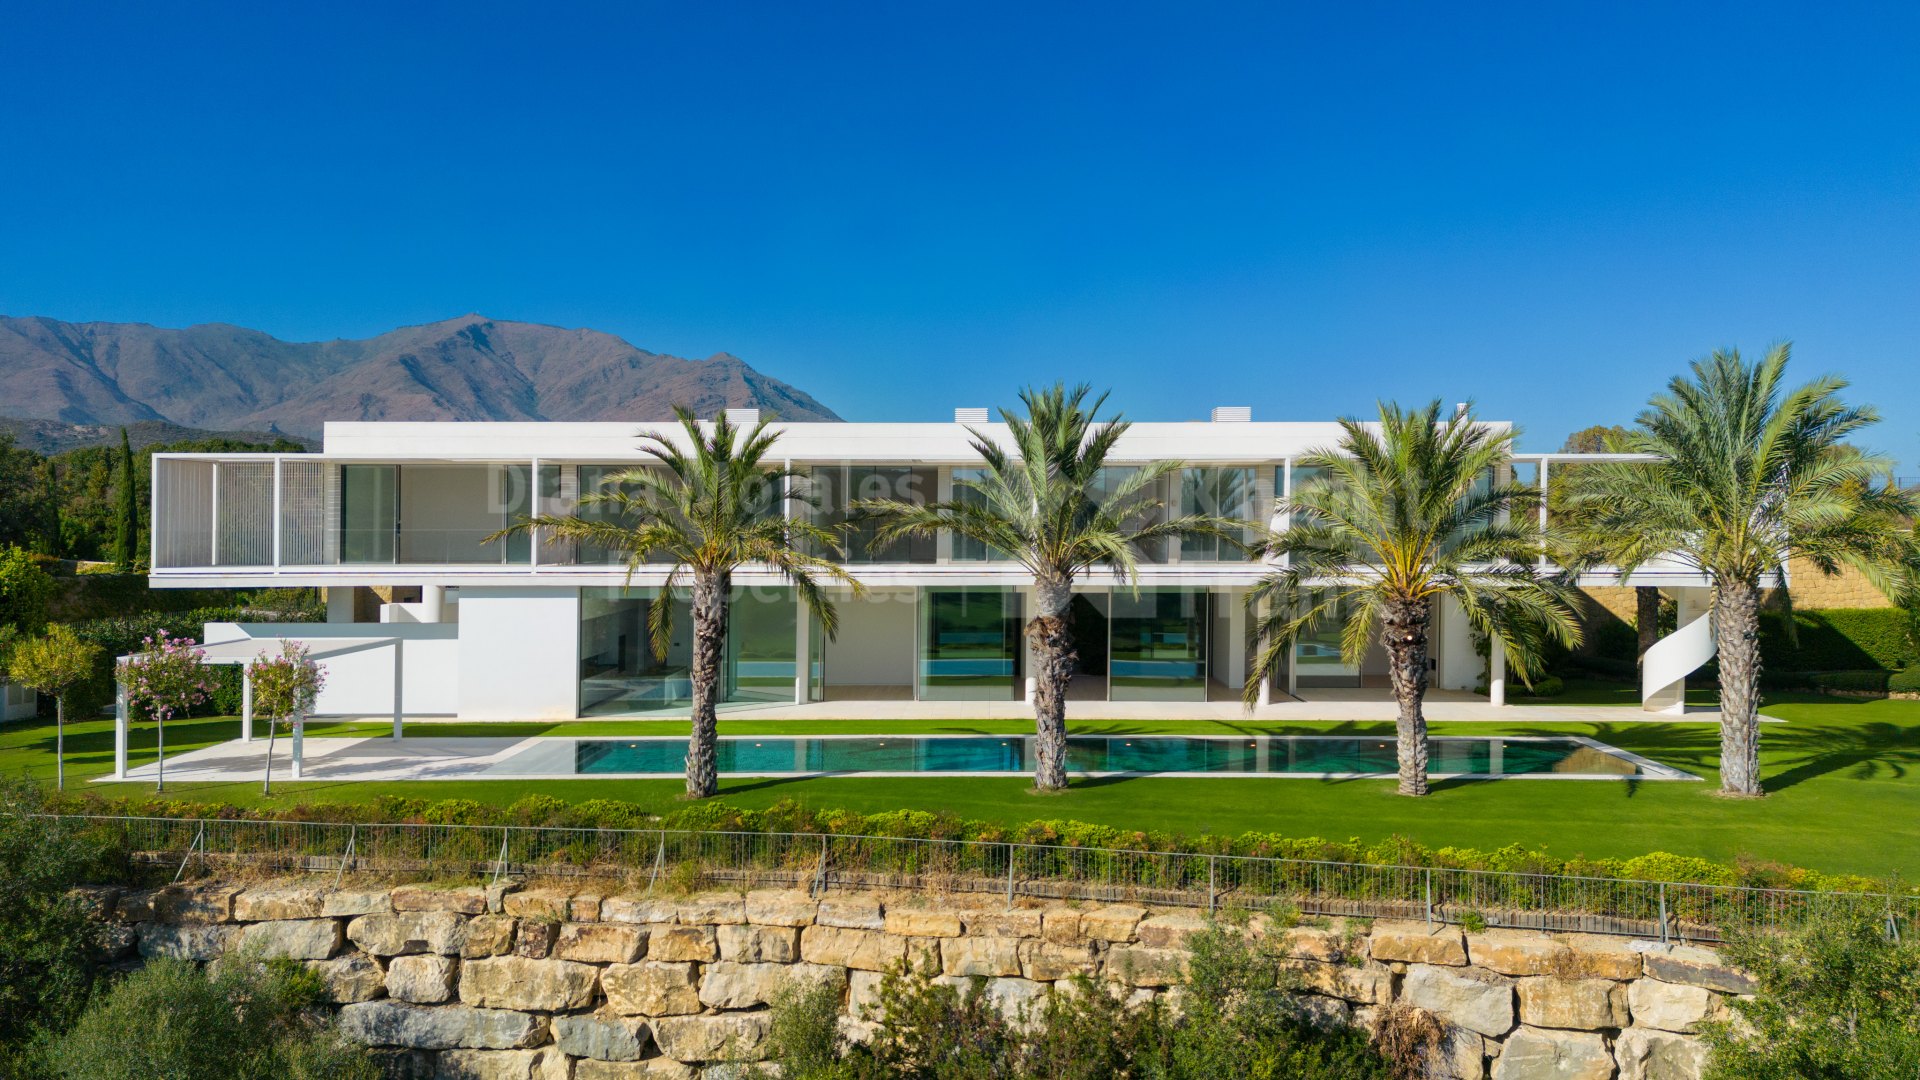 Finca Cortesin, Villa a estrenar de diseño único en entorno incomparable